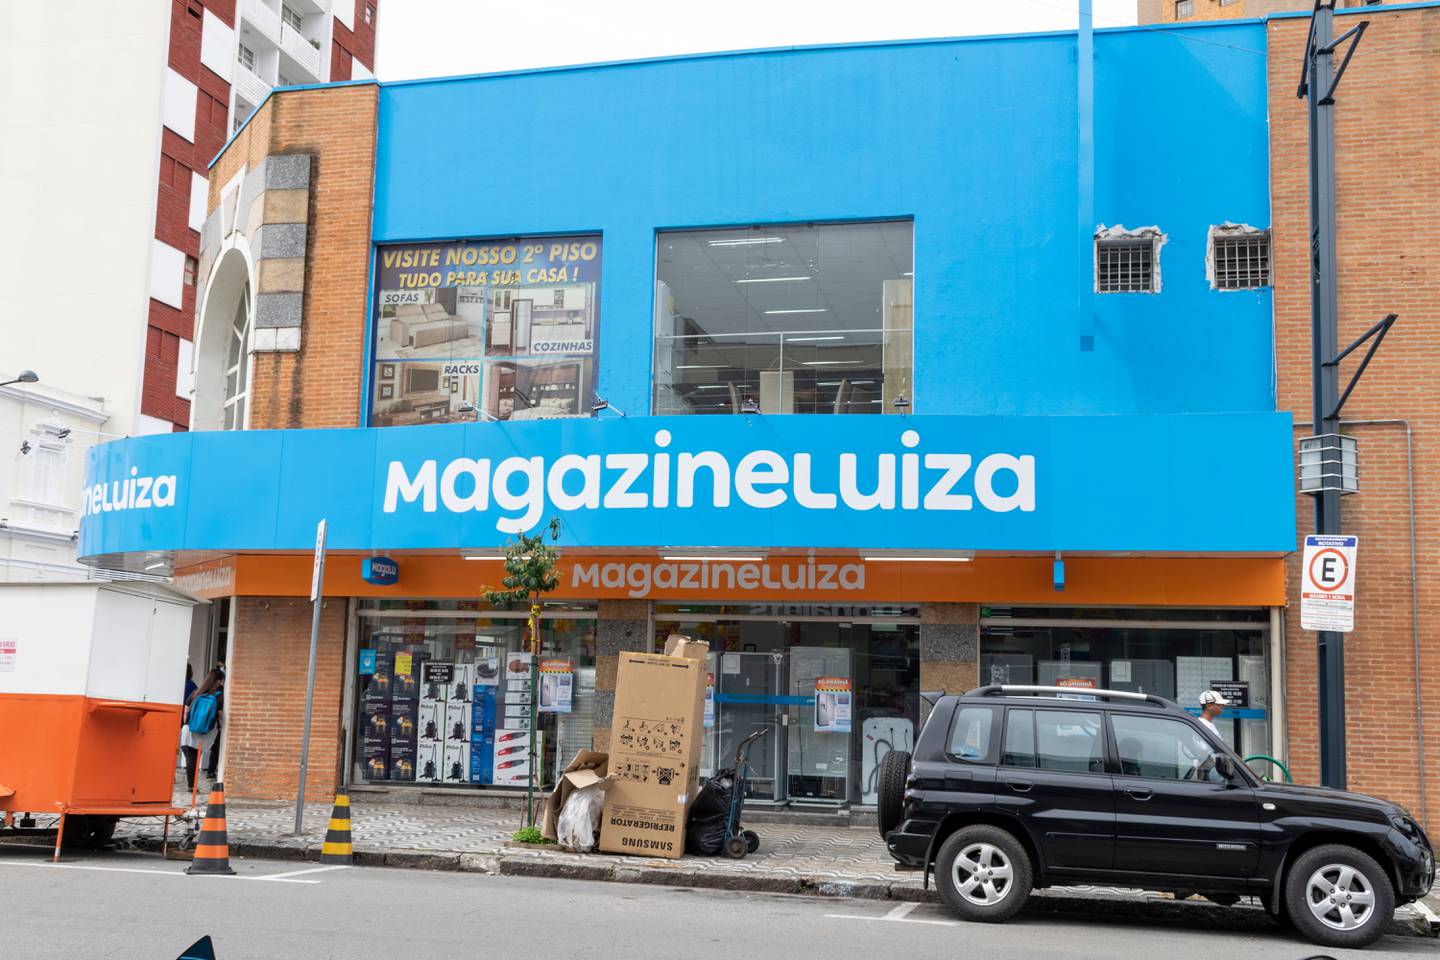 Magazine Luiza storefront in Minas Gerais, Brazil. Shutterstock.